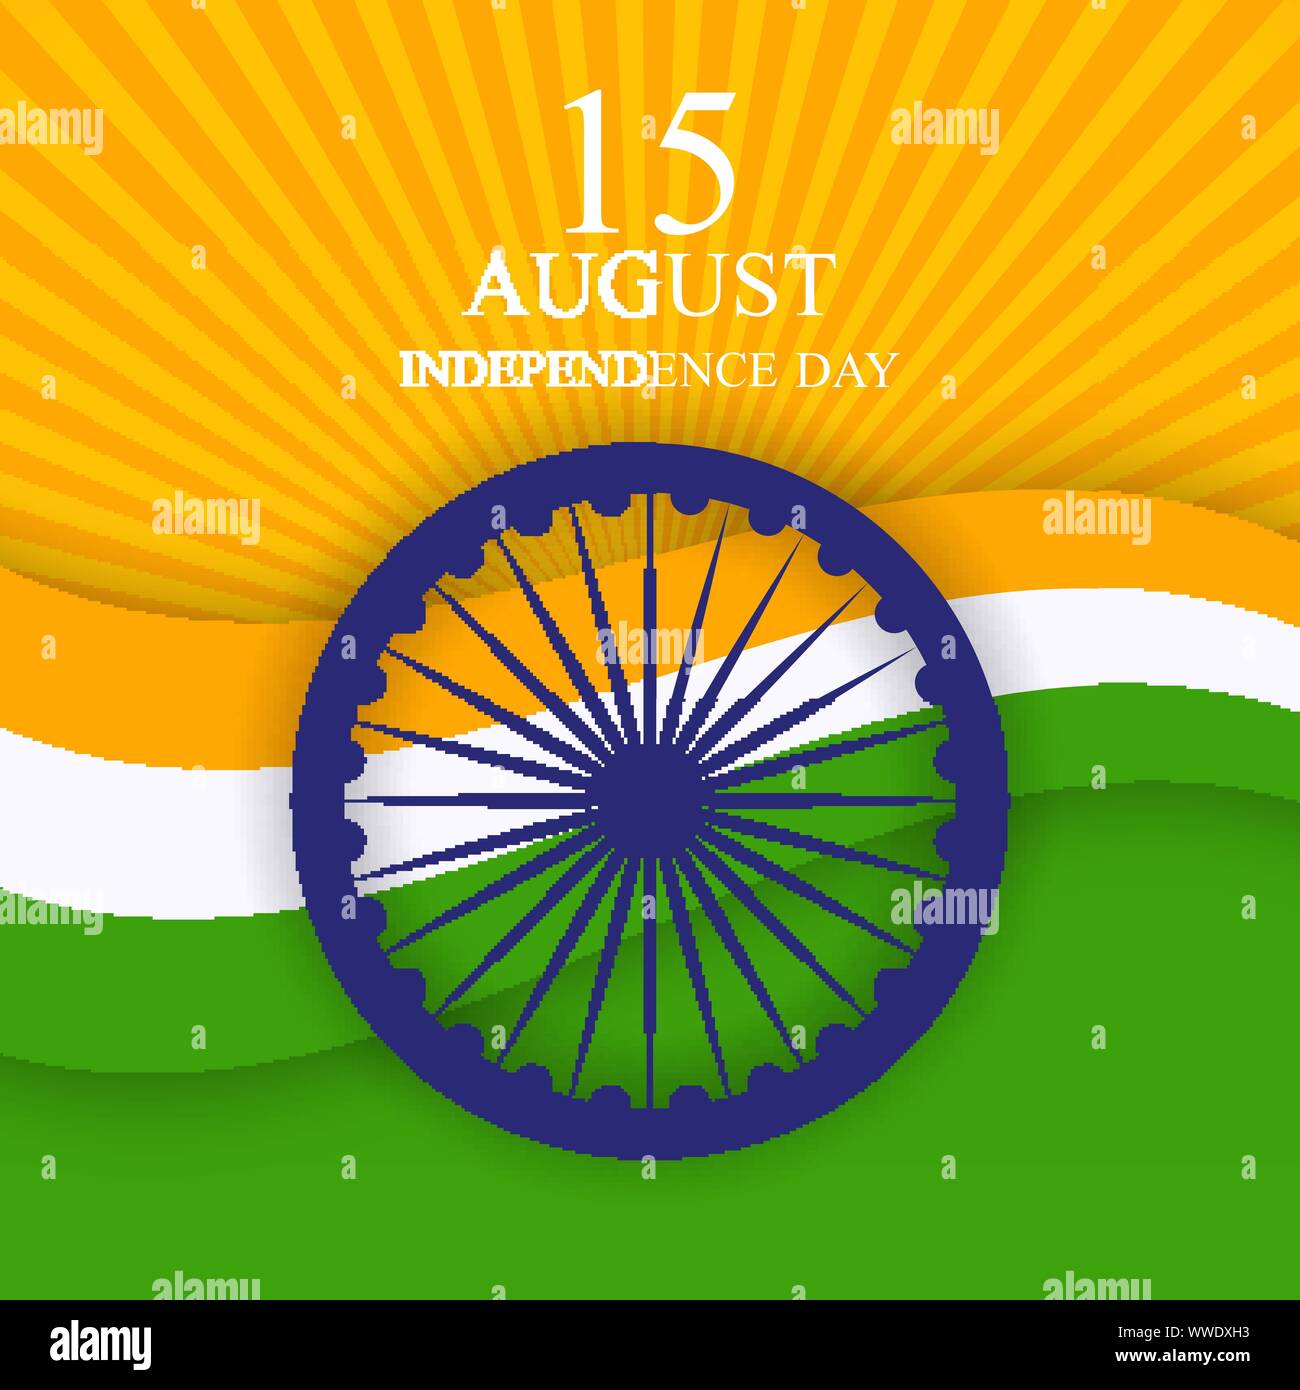 Lễ kỷ niệm ngày độc lập Ấn Độ 15 tháng 8 - Đây là dịp lễ hội quan trọng của quốc gia Ấn Độ, tưởng nhớ lại ngày 15 tháng 8 năm 1947, khi Ấn Độ đón nhận sự giải phóng sau nhiều năm thuộc địa. Hãy cùng đón xem những hoạt động và sự kiện đặc biệt trong ngày này.